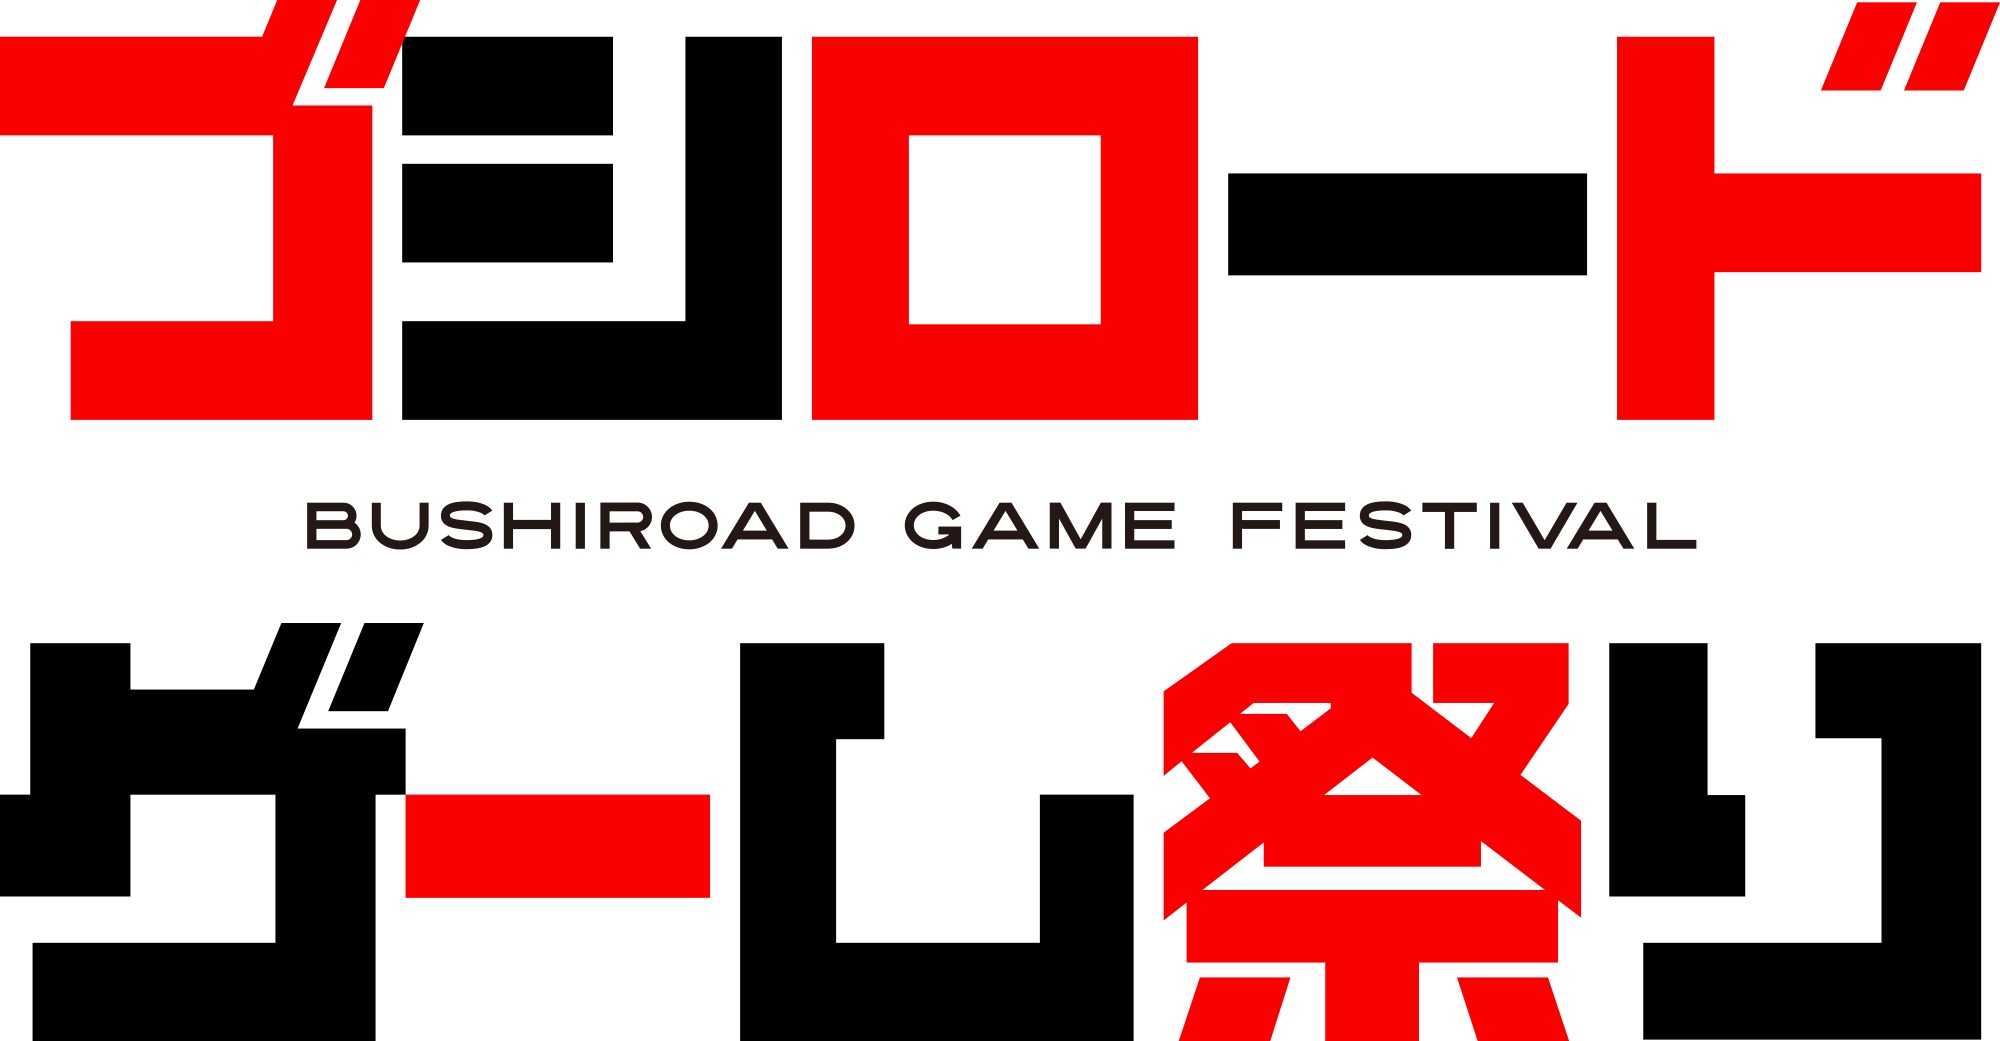 『ブシロードゲーム祭り』ロゴ